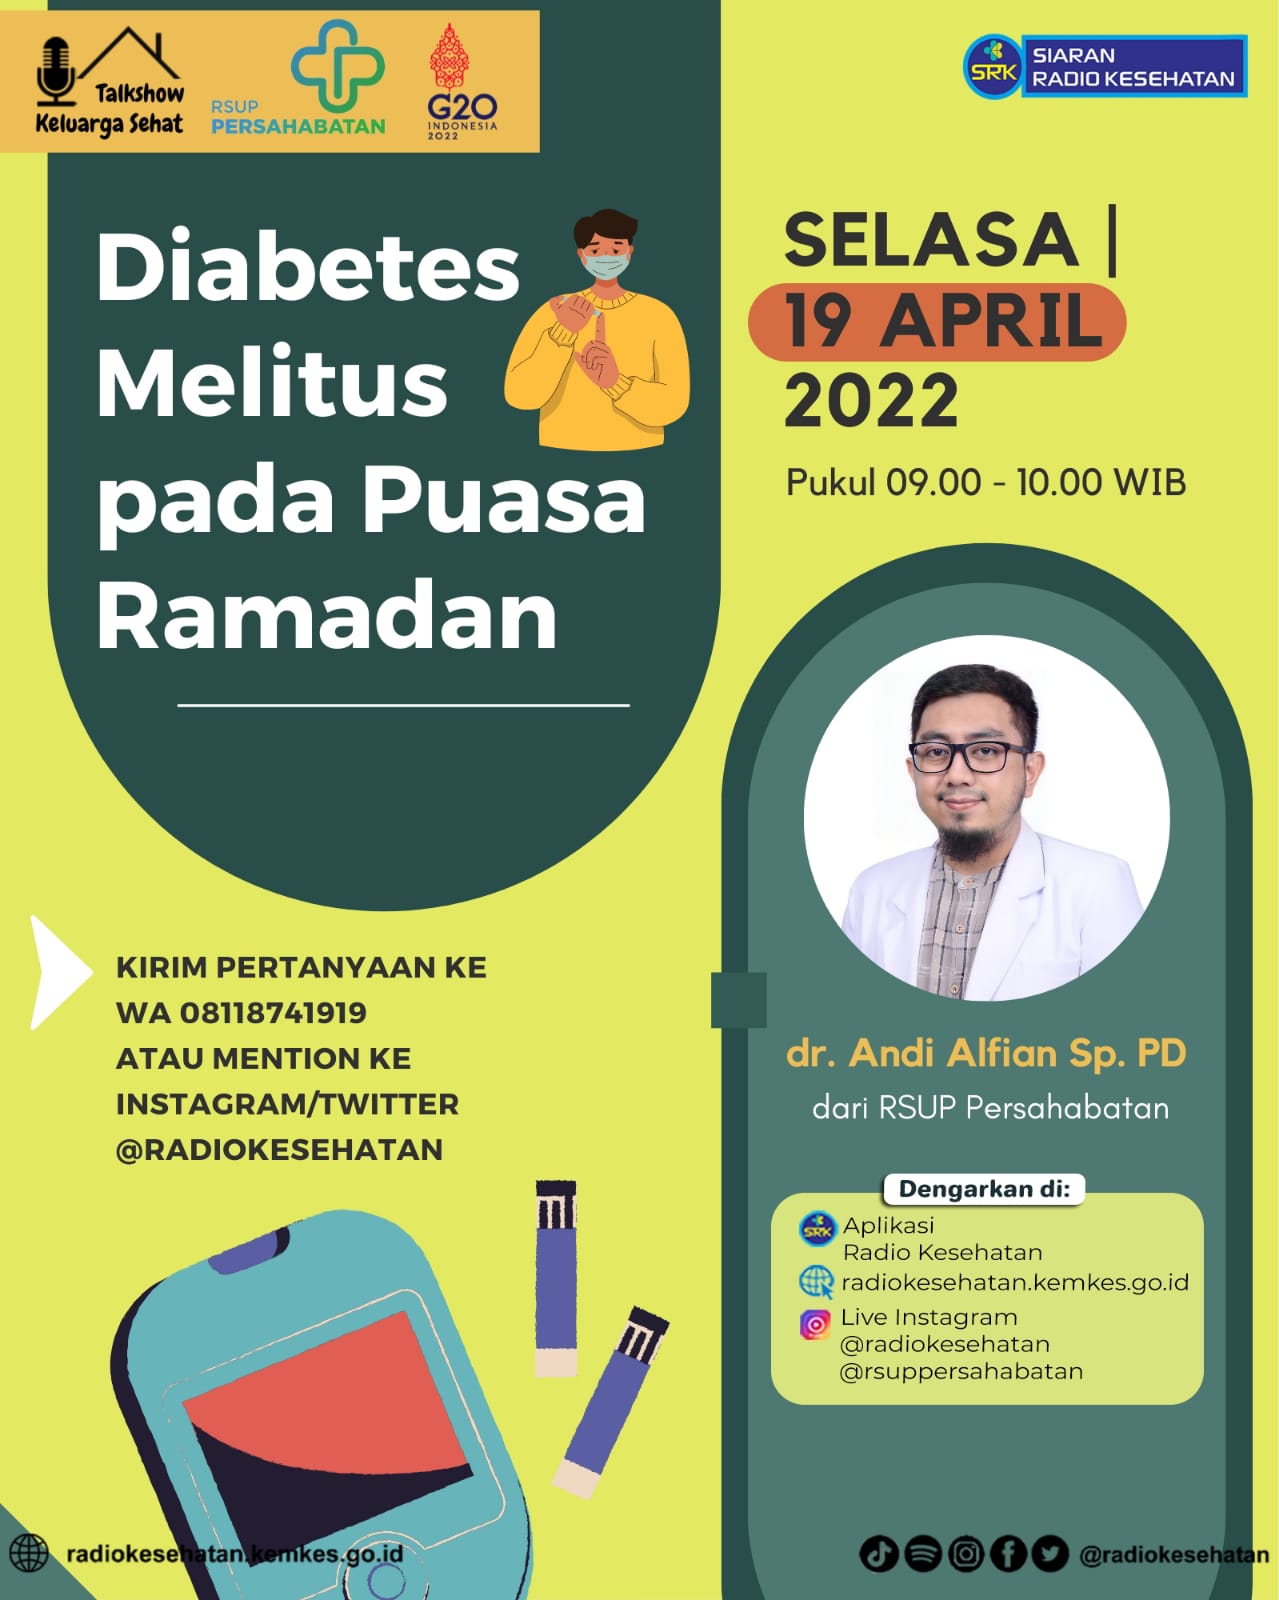 Diabetes Melitus pada Puasa Ramadan